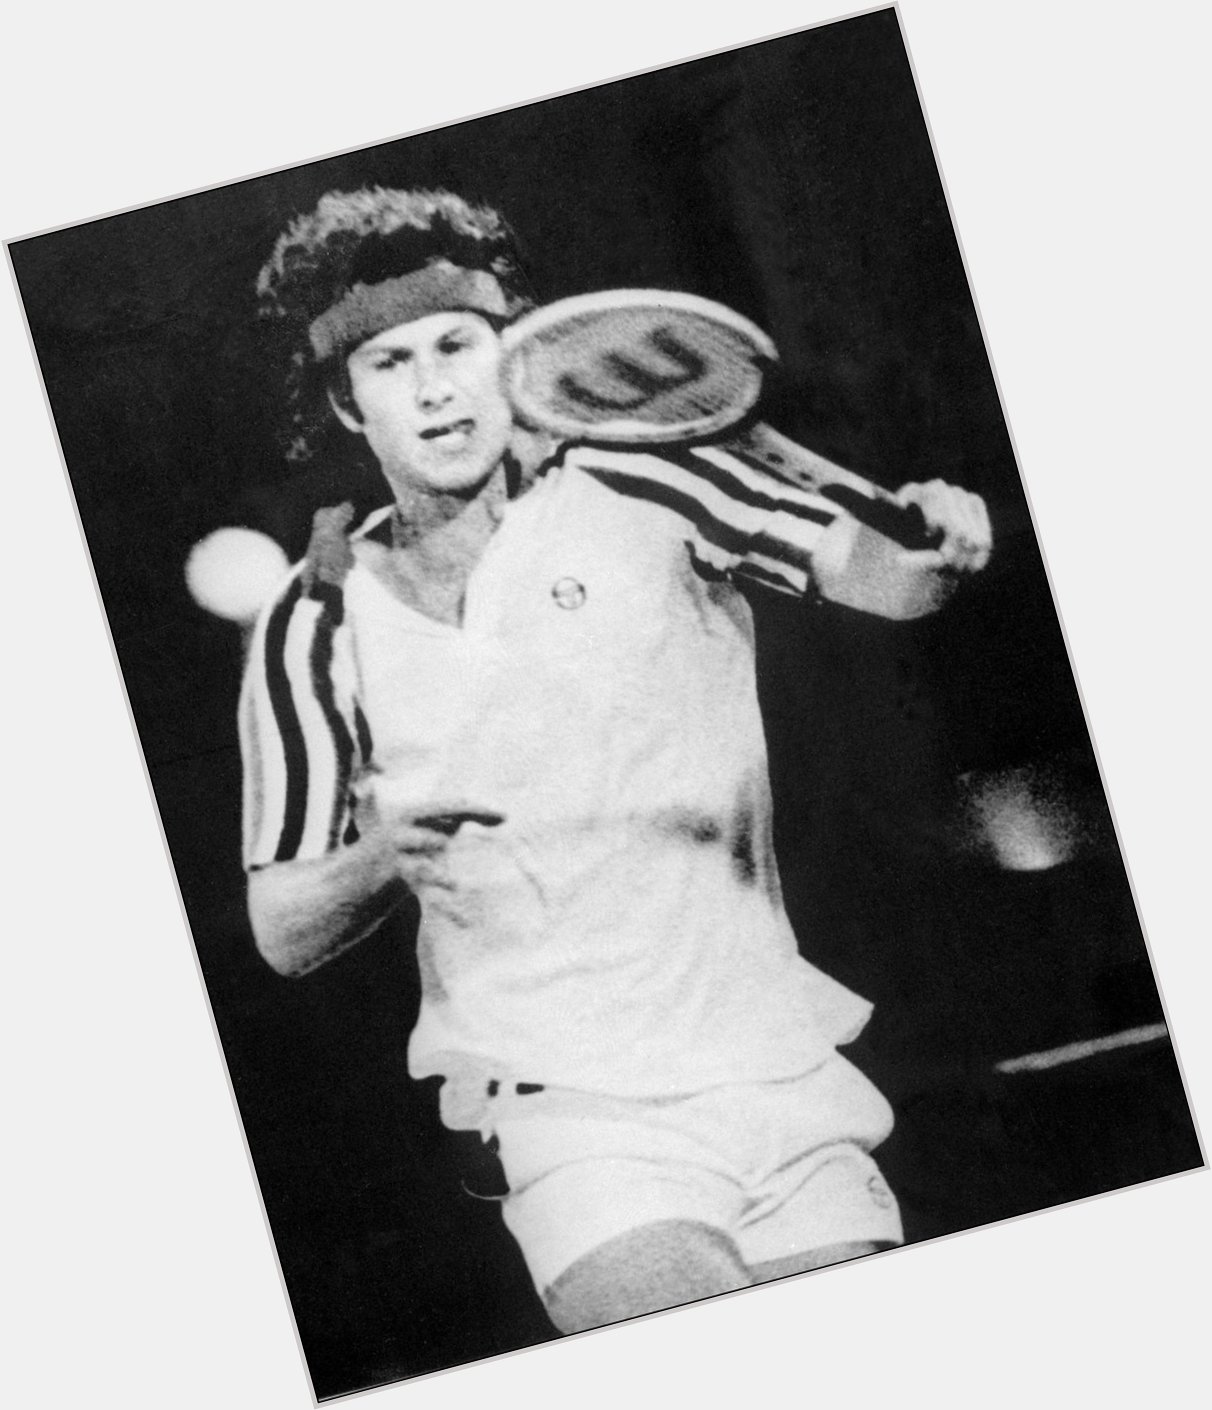 Happy birthday to four-time champion, John McEnroe! 